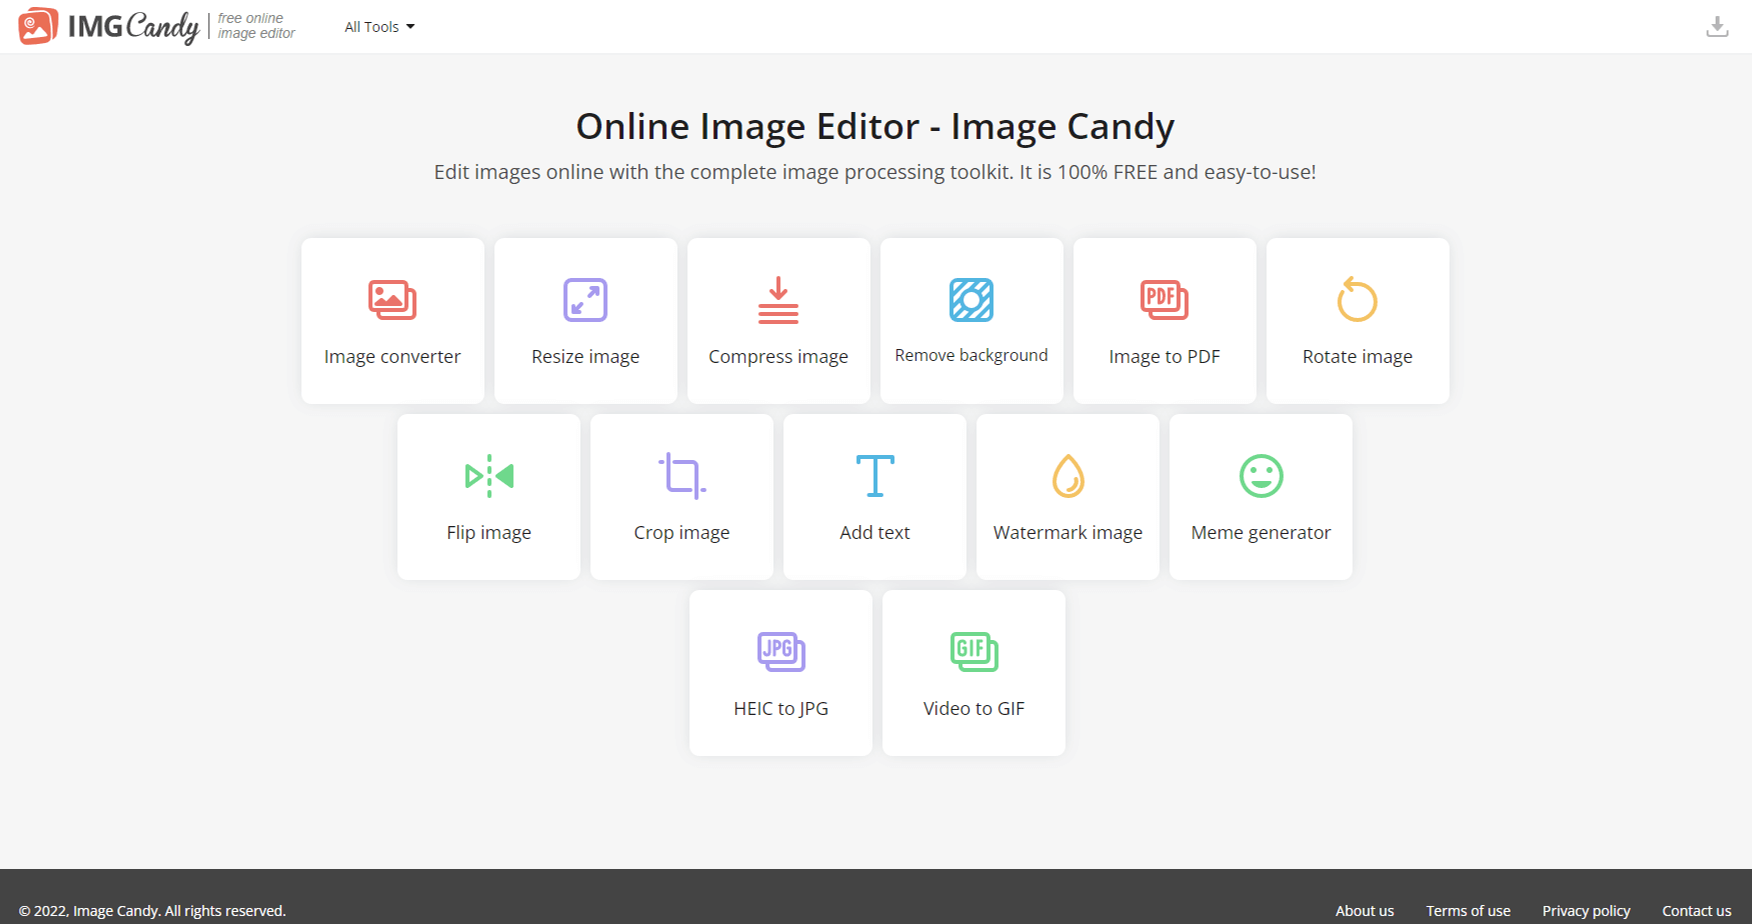 Image Candy 免費圖片整合編輯器，線上轉檔、壓縮、去背工具推薦！_鵠學苑